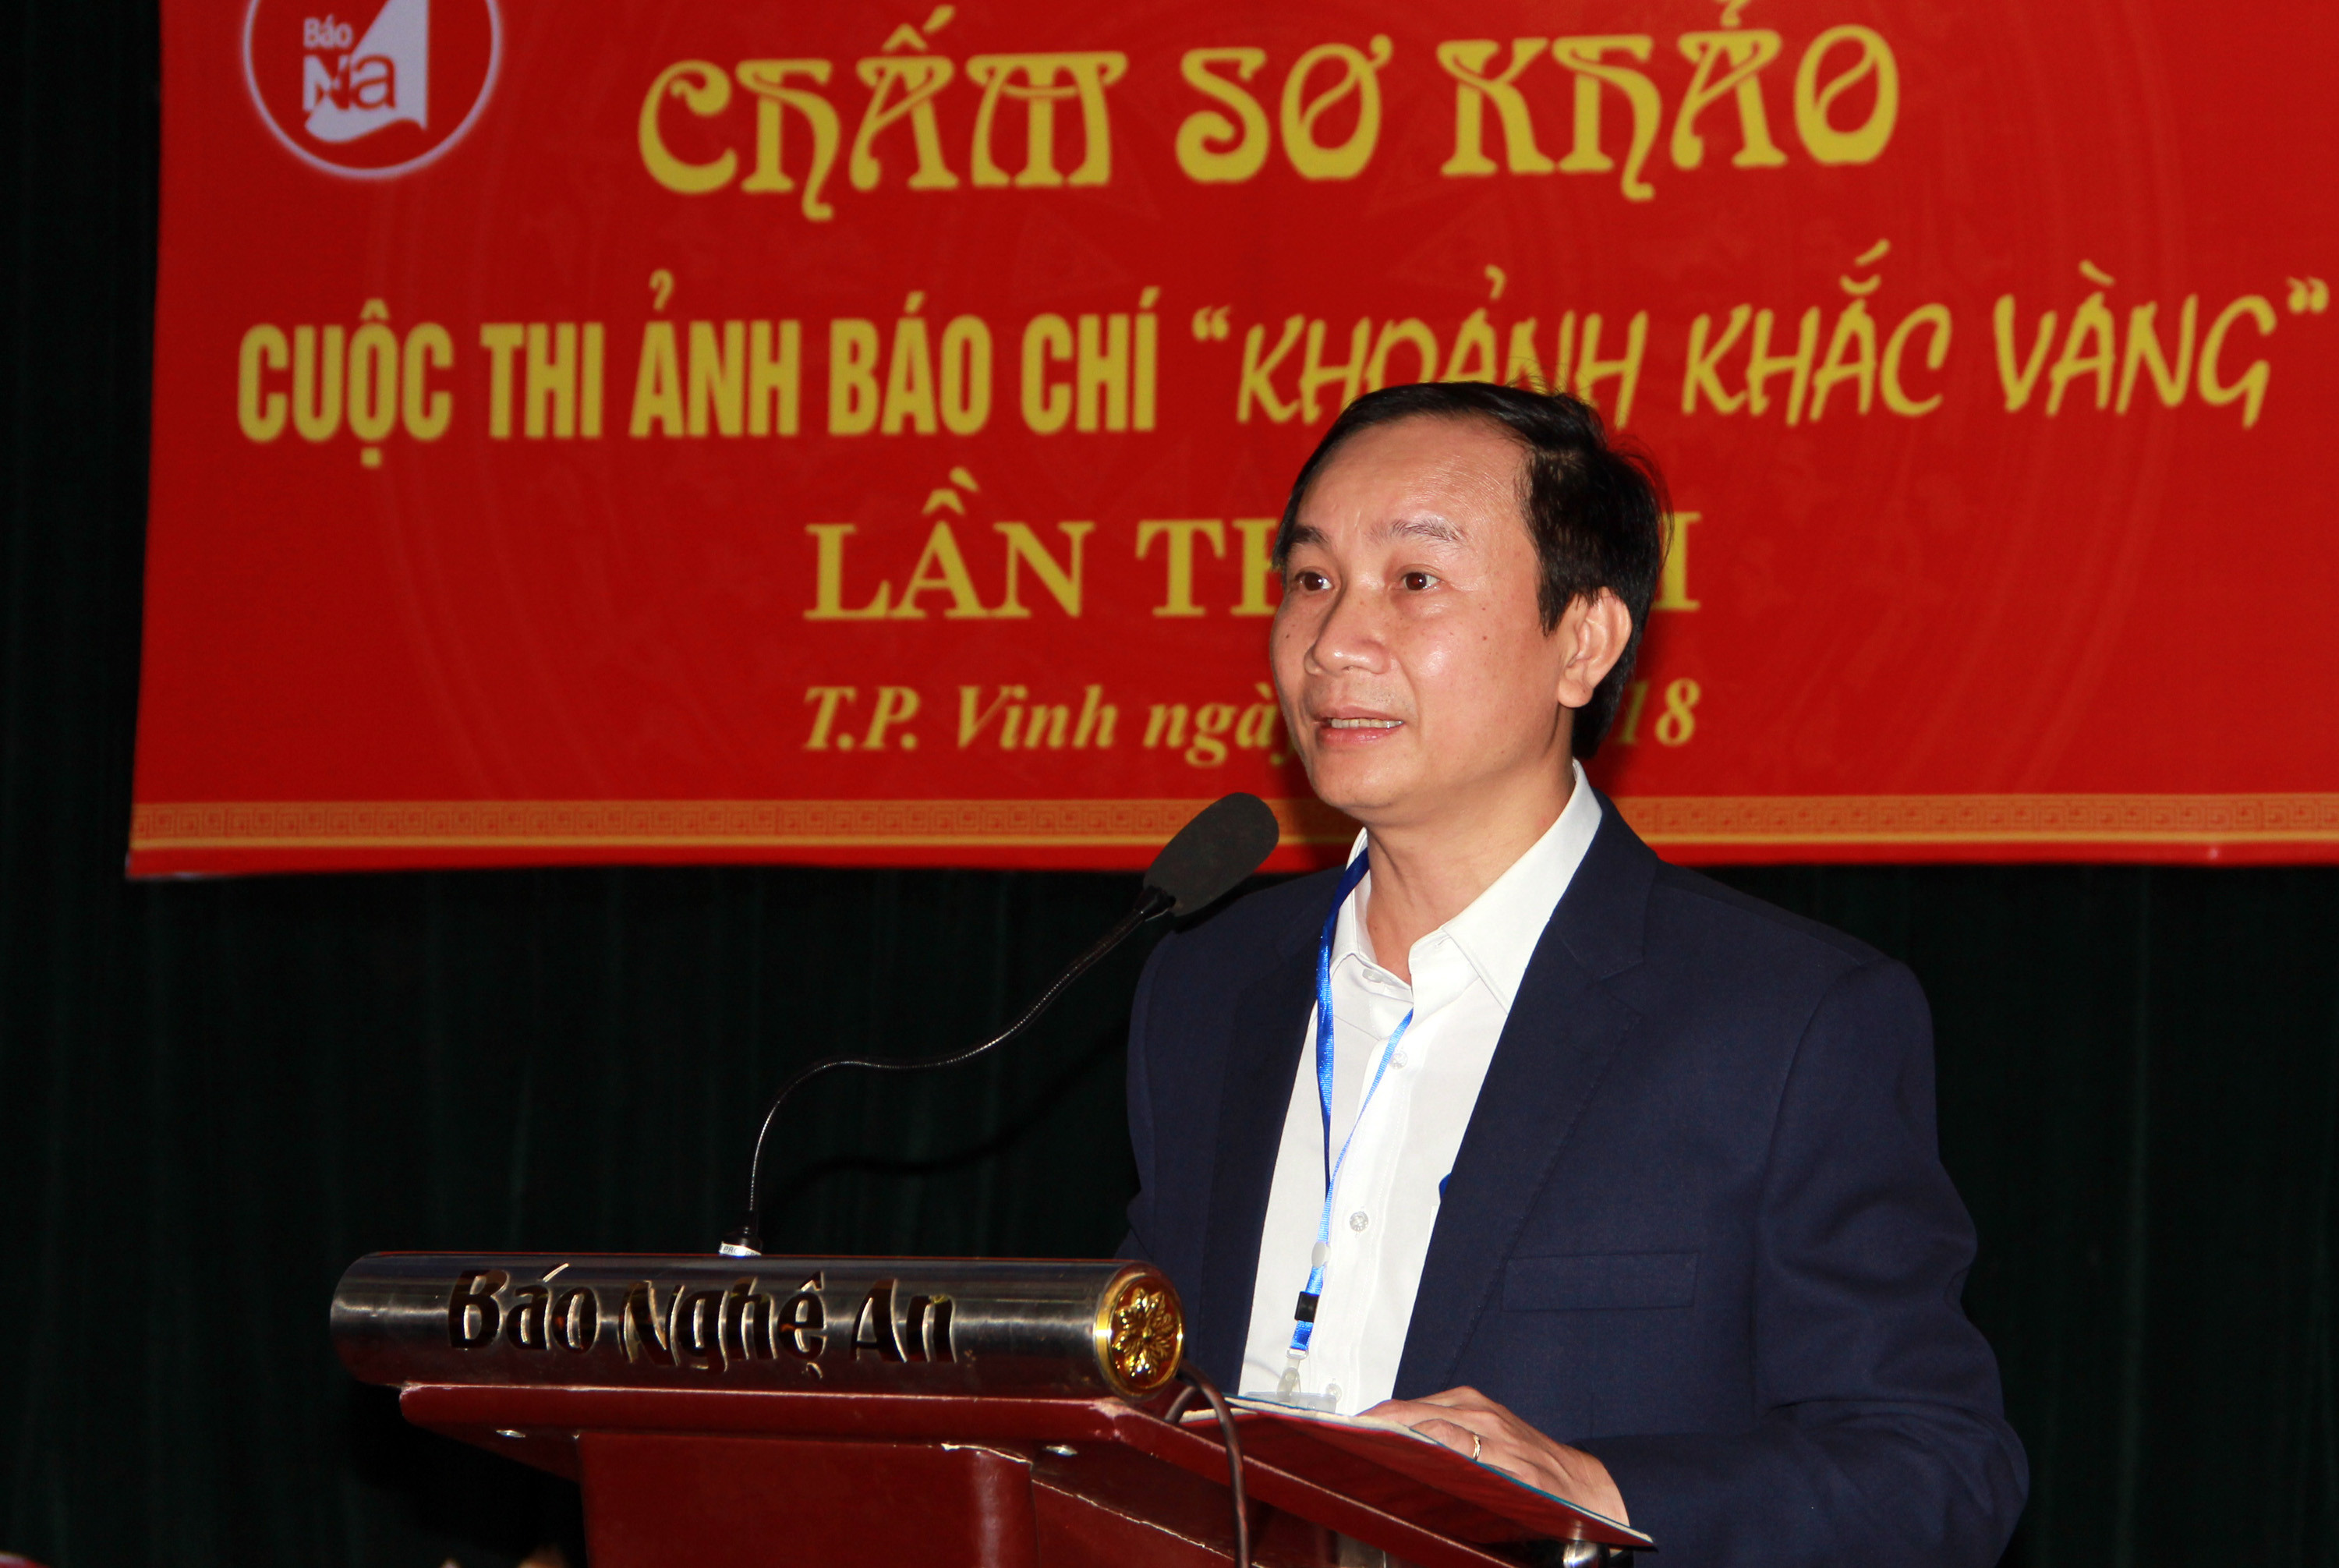 Đồng chí Trần Văn Hùng - Phó Trưởng Ban Tổ chức giải phát biểu tại buổi chấm sơ khảo. Ảnh: Hồ Phương